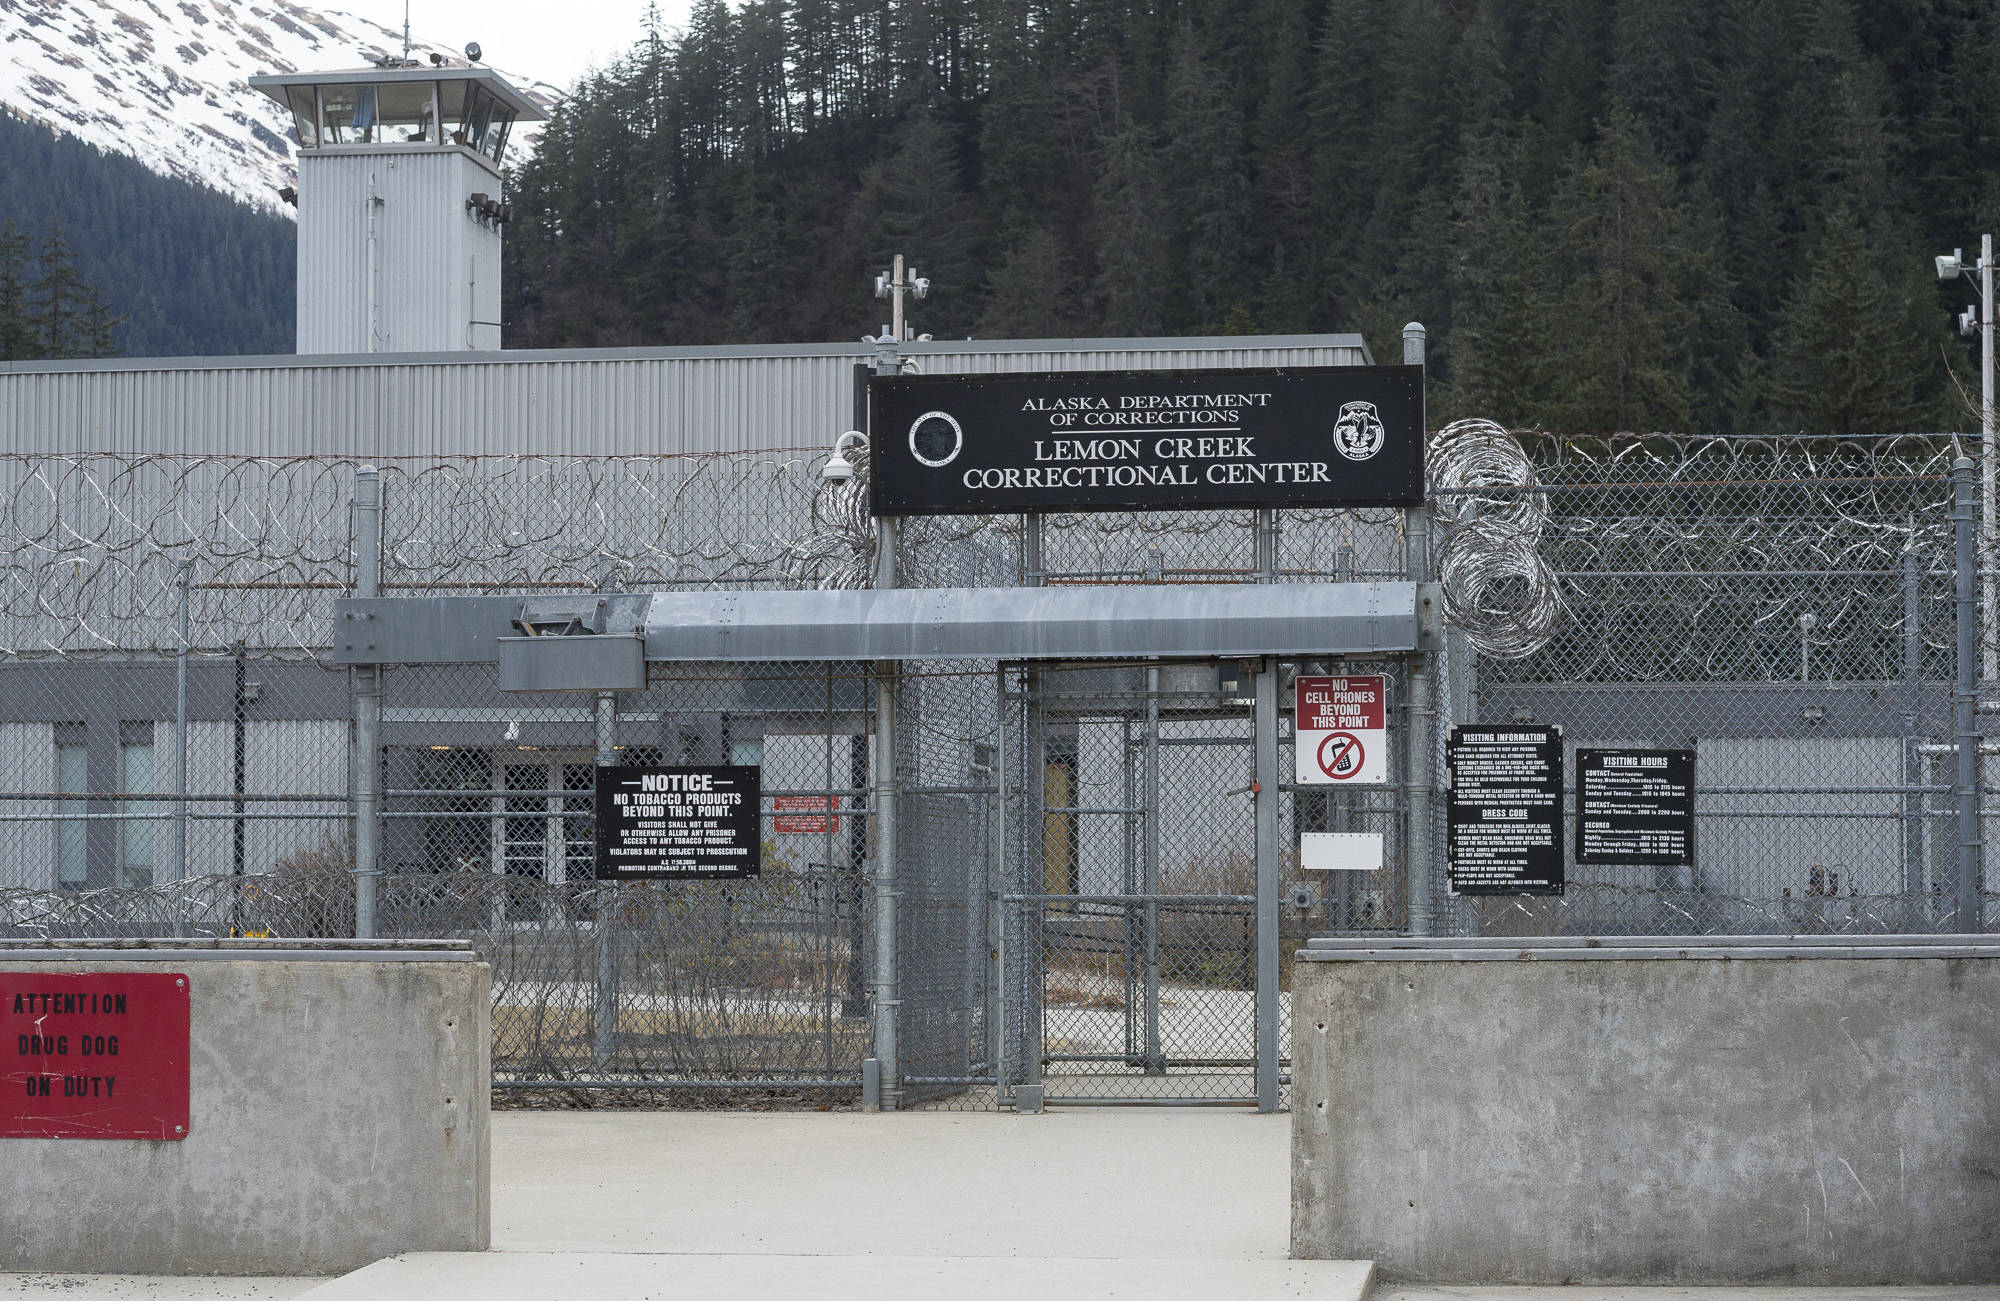 Lemon Creek Correctional Center pictured on April 13, 2018. (Michael Penn | Juneau Empire File)